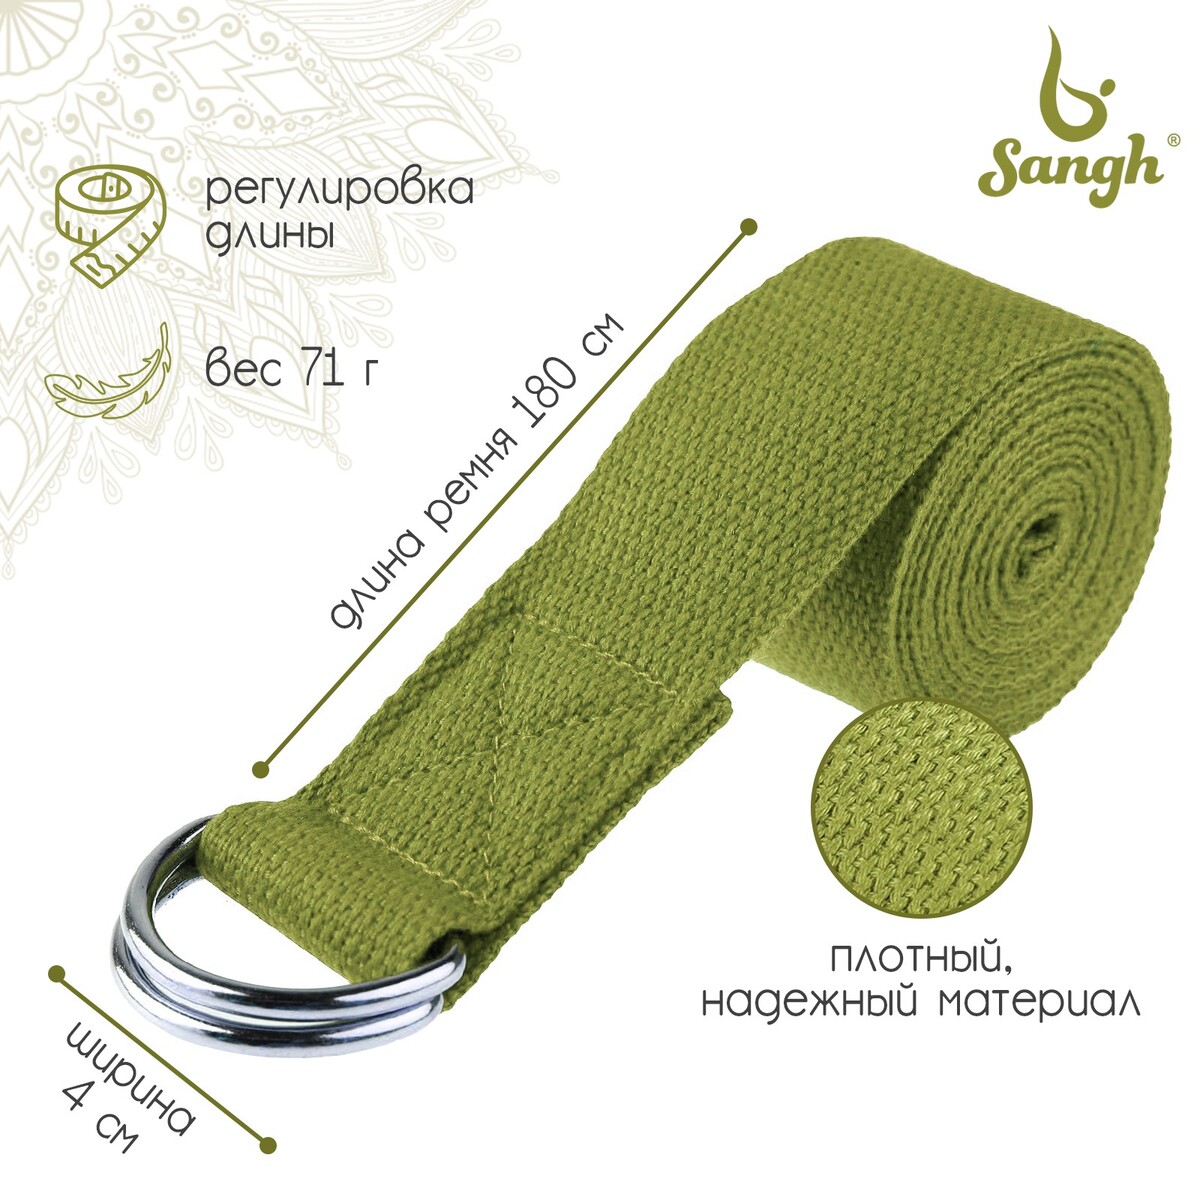 фото Ремень для йоги sangh, 180×4 см, цвет зеленый